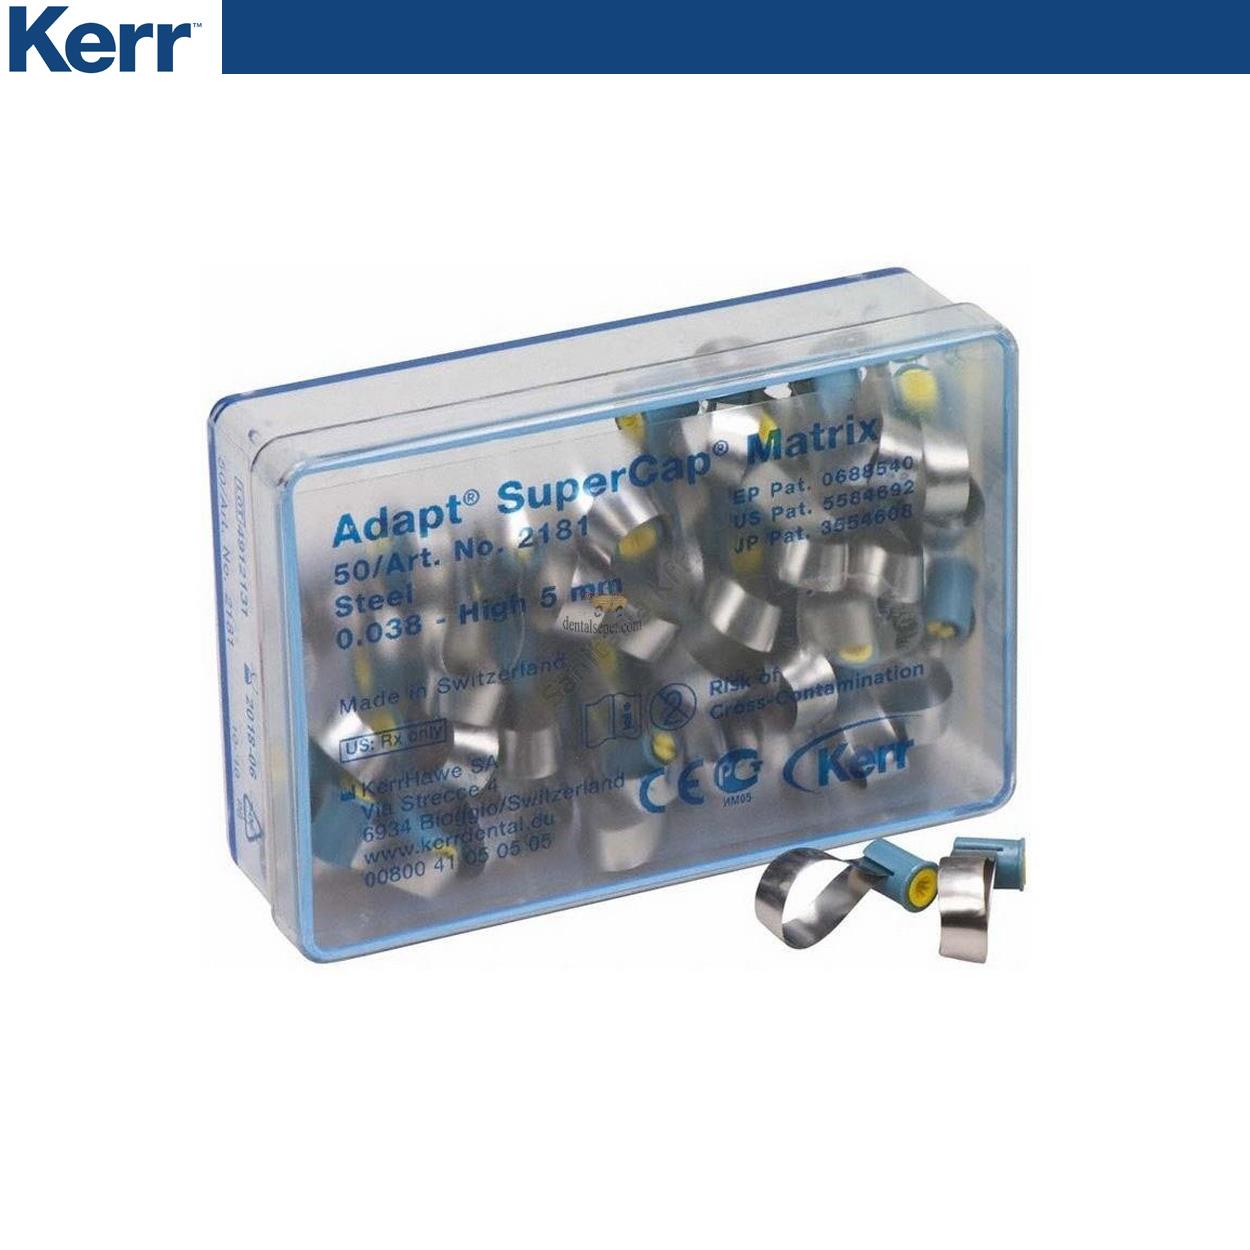 DentrealStore - Kerr SuperMat Adapt SuperCap Matrices Refil - 2181